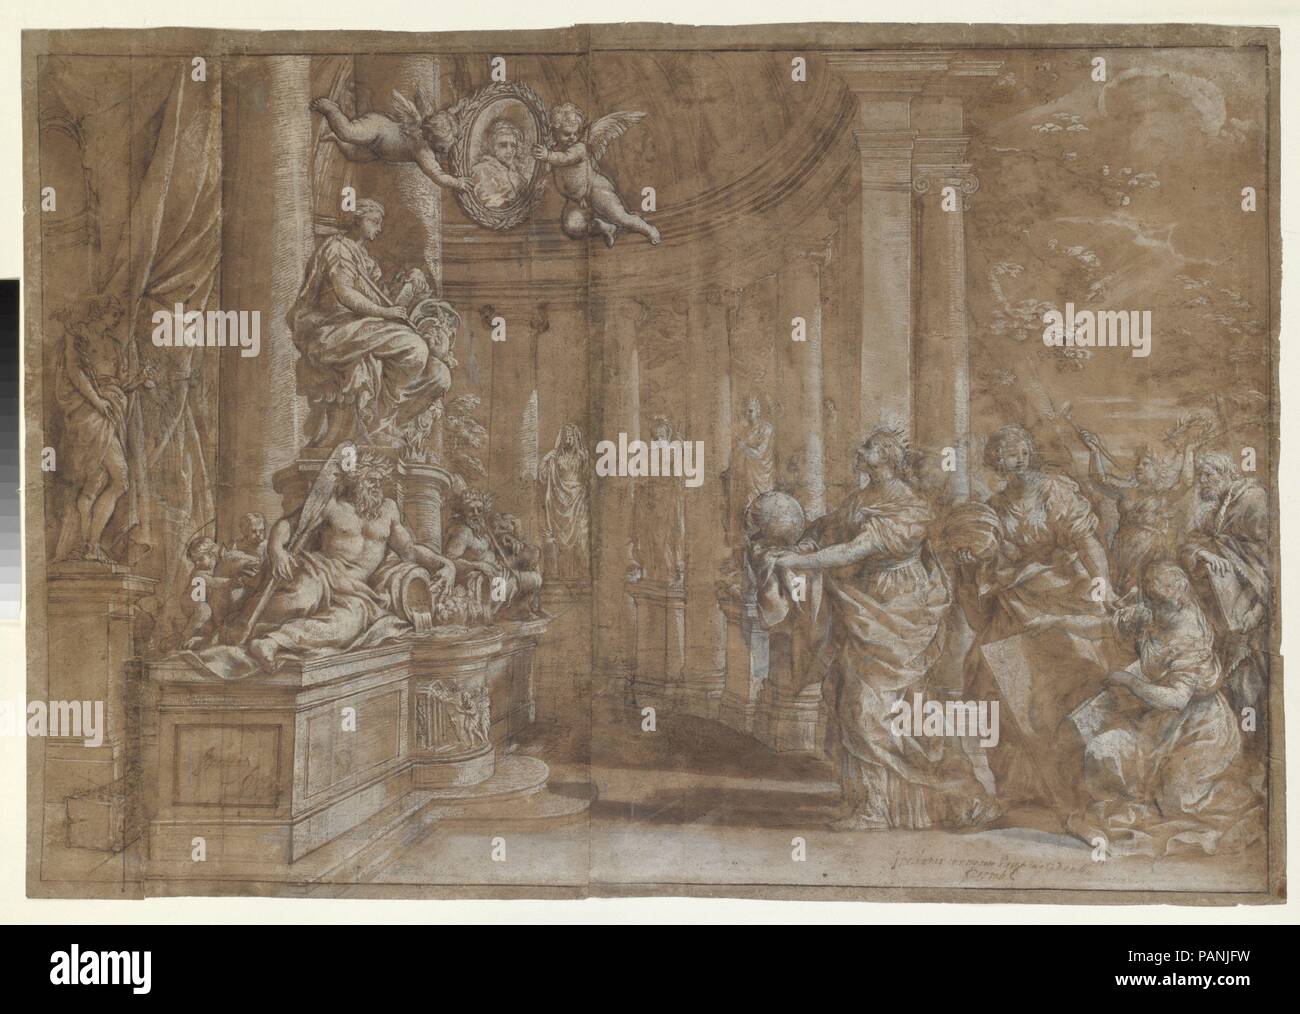 Alegoría en honor del Cardenal Antonio Barberini, el Joven (1607-1671) (diseño para un grabado). Artista: Pietro da Cortona (Pietro Berrettini) (italiano, Cortona 1596-1669 Roma). Dimensiones: 20-1/2 x 30-3/8 in. (52,0 x 77,2 cm). Fecha: 1596-1669. El alto acabado de este dibujo, así como las dos anotaciones que comienza "Incidat ...", en la mano de un censor eclesiástico, indican que fue diseñada por Pietro da Cortona para su grabador - y, de hecho, el diseño fue reproducido en las mismas dimensiones pero a la inversa por el grabador holandés Theodor Matham (1589-1676), un contemporáneo de la arti Foto de stock